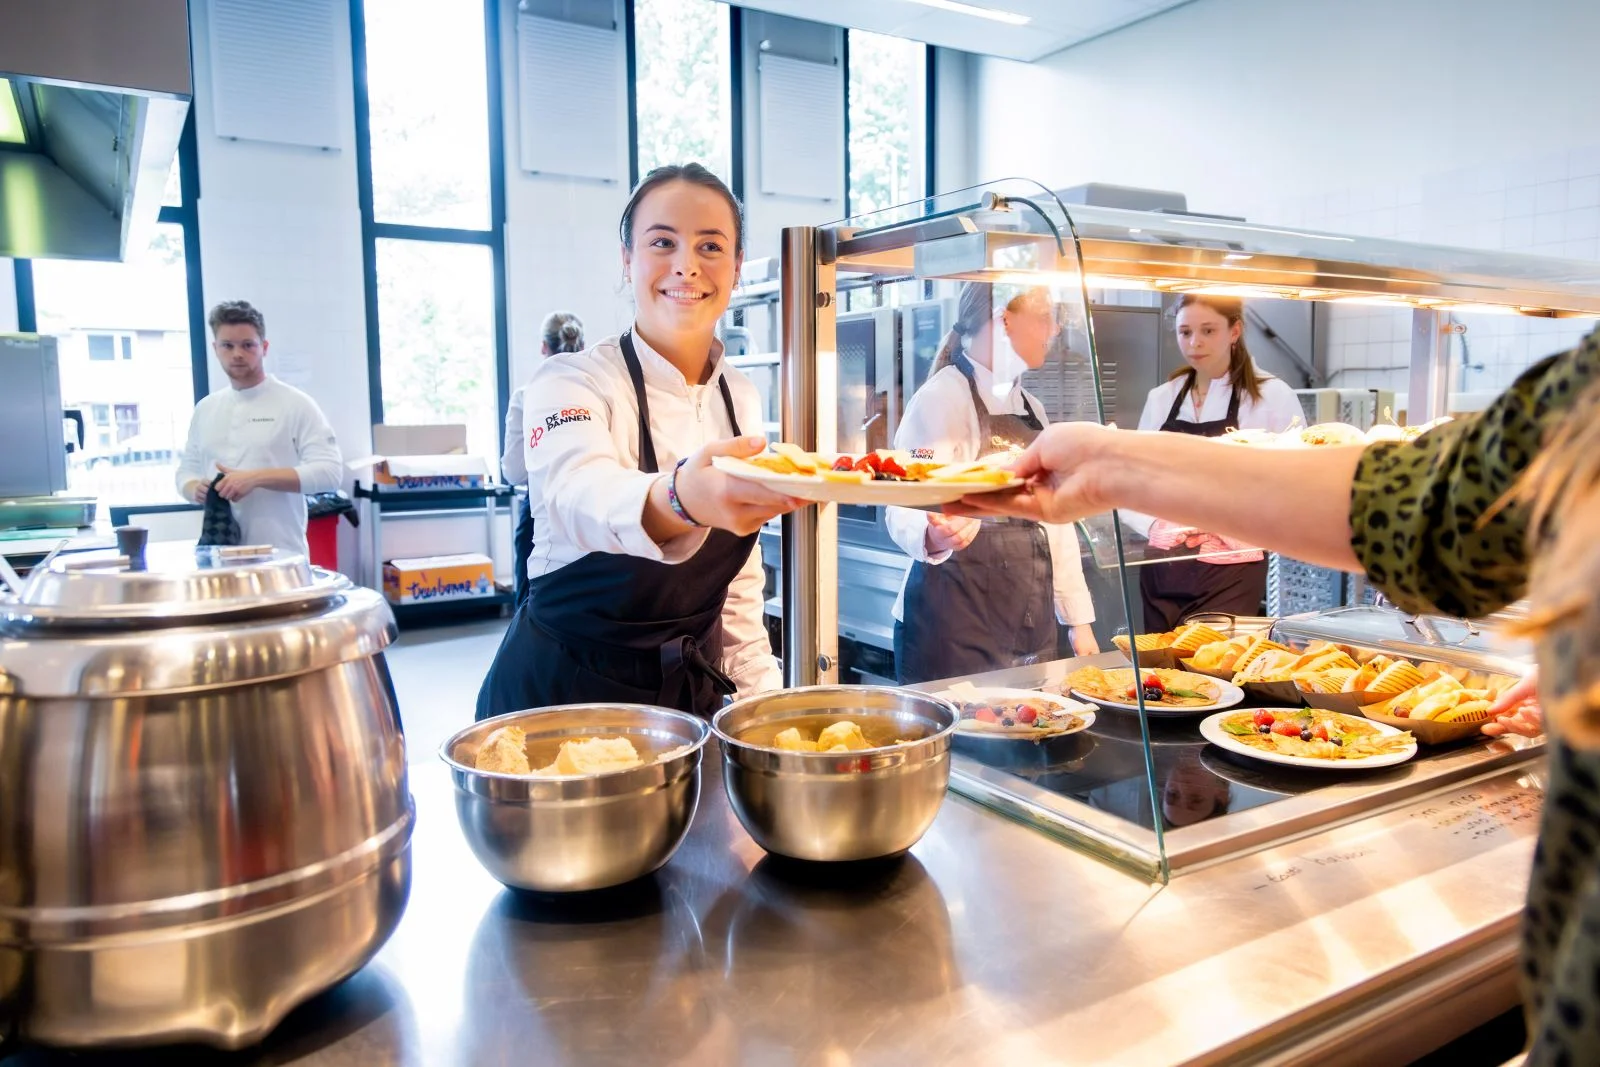 Studenten van de opleiding Gespecialiseerd kok krijgen praktijkles op school in Eindhoven.